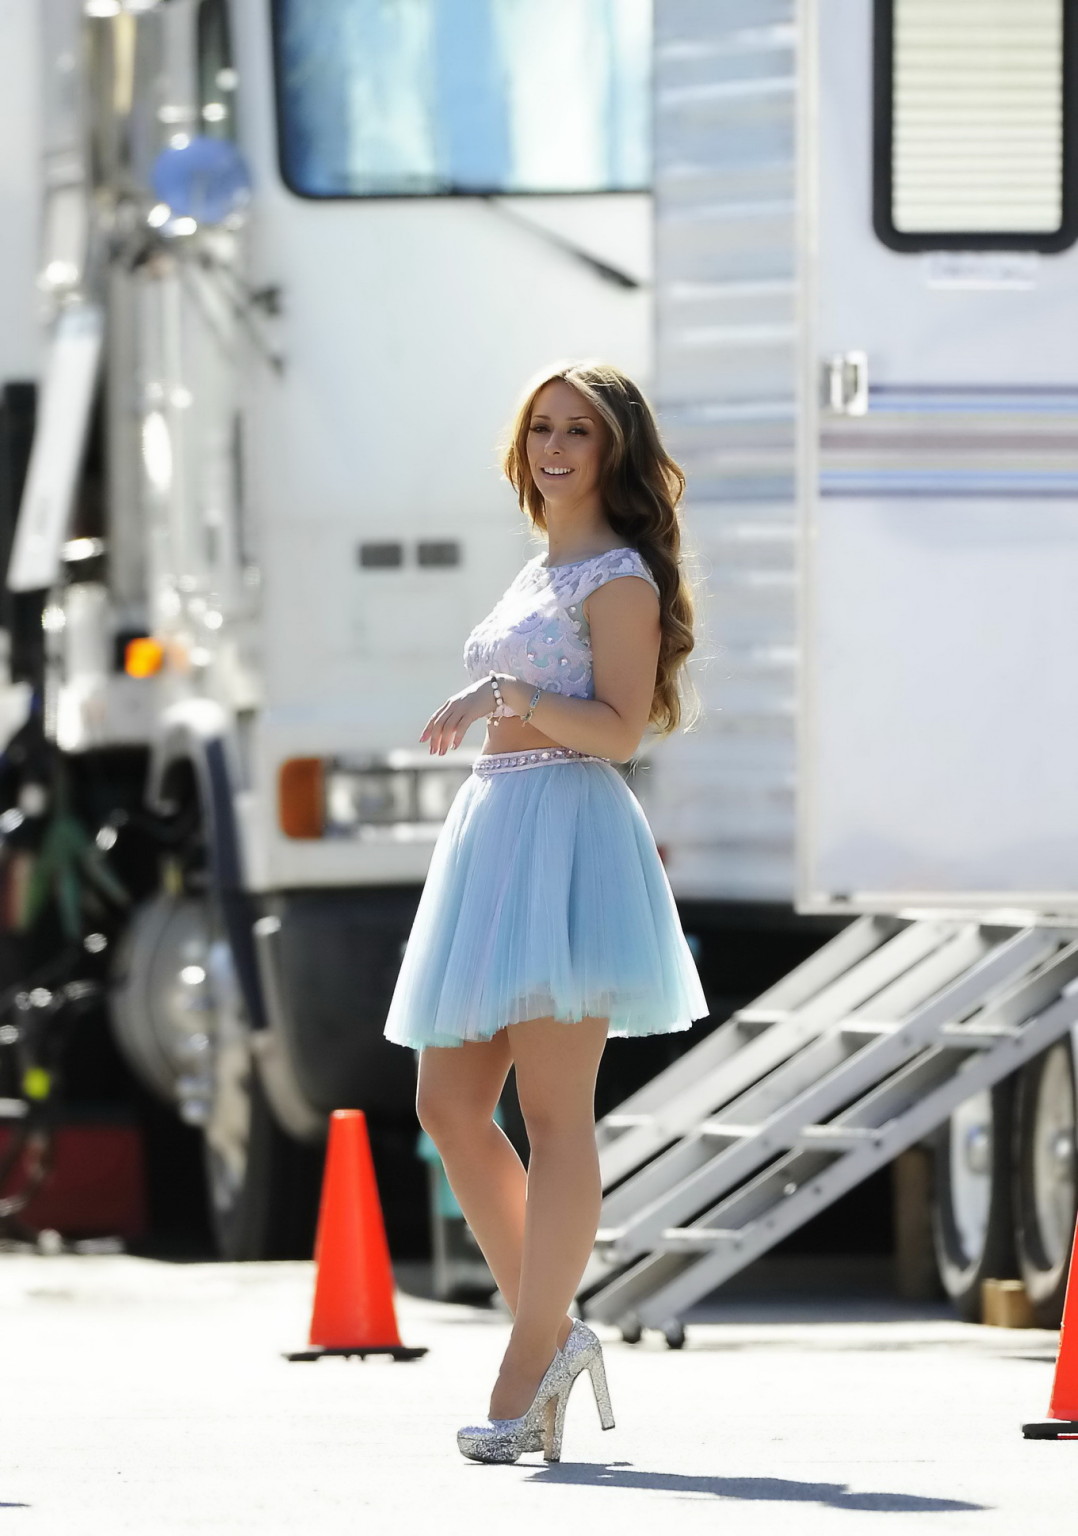 Jennifer love hewitt tetona de piernas en top transparente y minifalda mientras filma
 #75244529